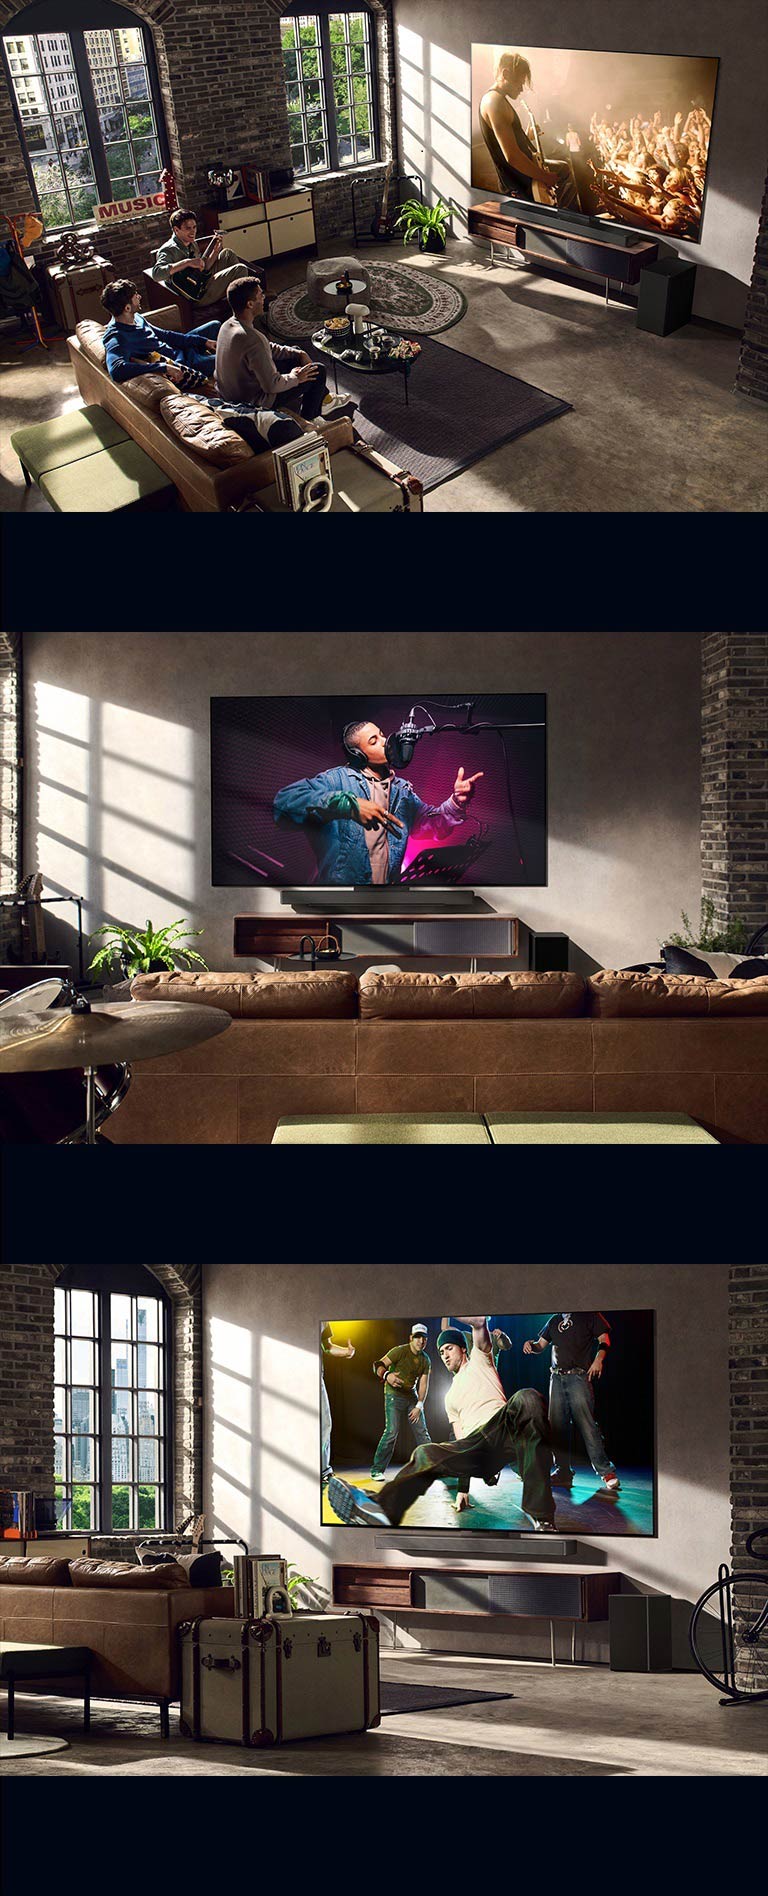 Három életstíluskép látható. Felülről lefelé: három férfi egy koncertvideót néz a nappaliban. A falon egy LG TV-n zenei felvétel megy, a képernyőn breaktánc-jelenet látható térbeli nézetben.